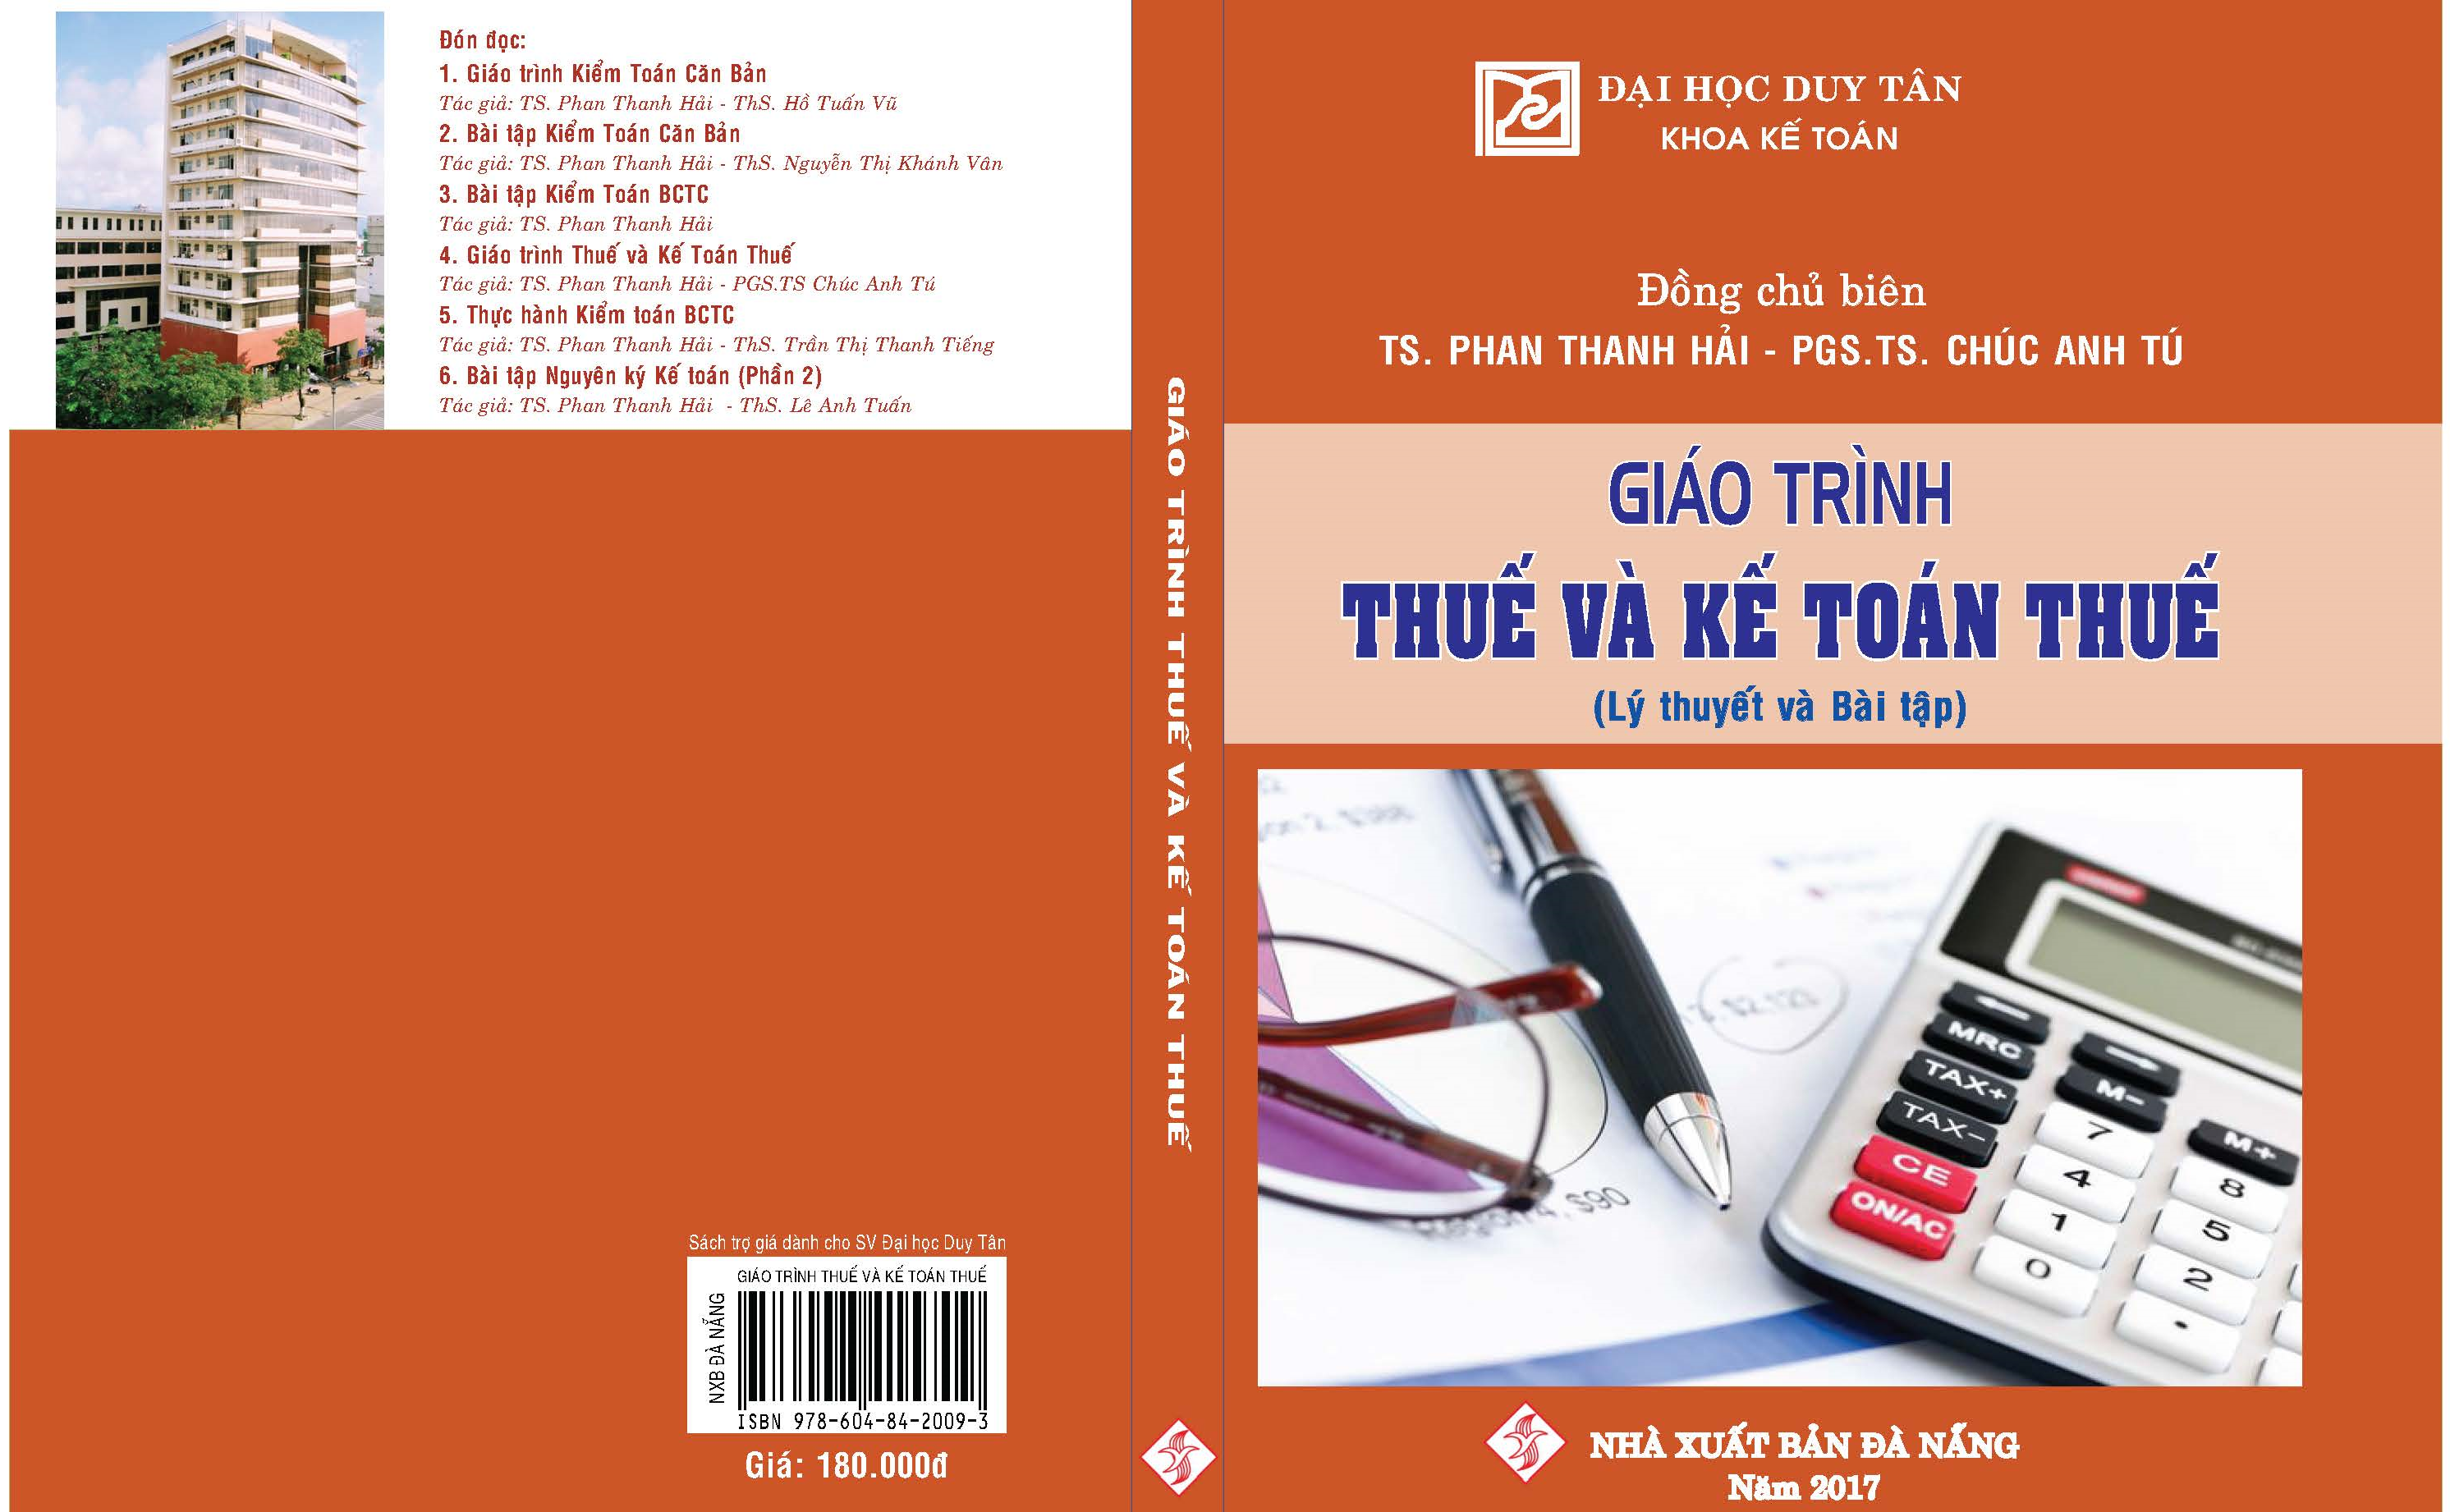 GIÁO TRÌNH THUẾ VÀ KẾ TOÁN THUẾ, Nhà xuất bản Đà Nẵng, Năm 2017, ISBN 978-604-84-2556-2